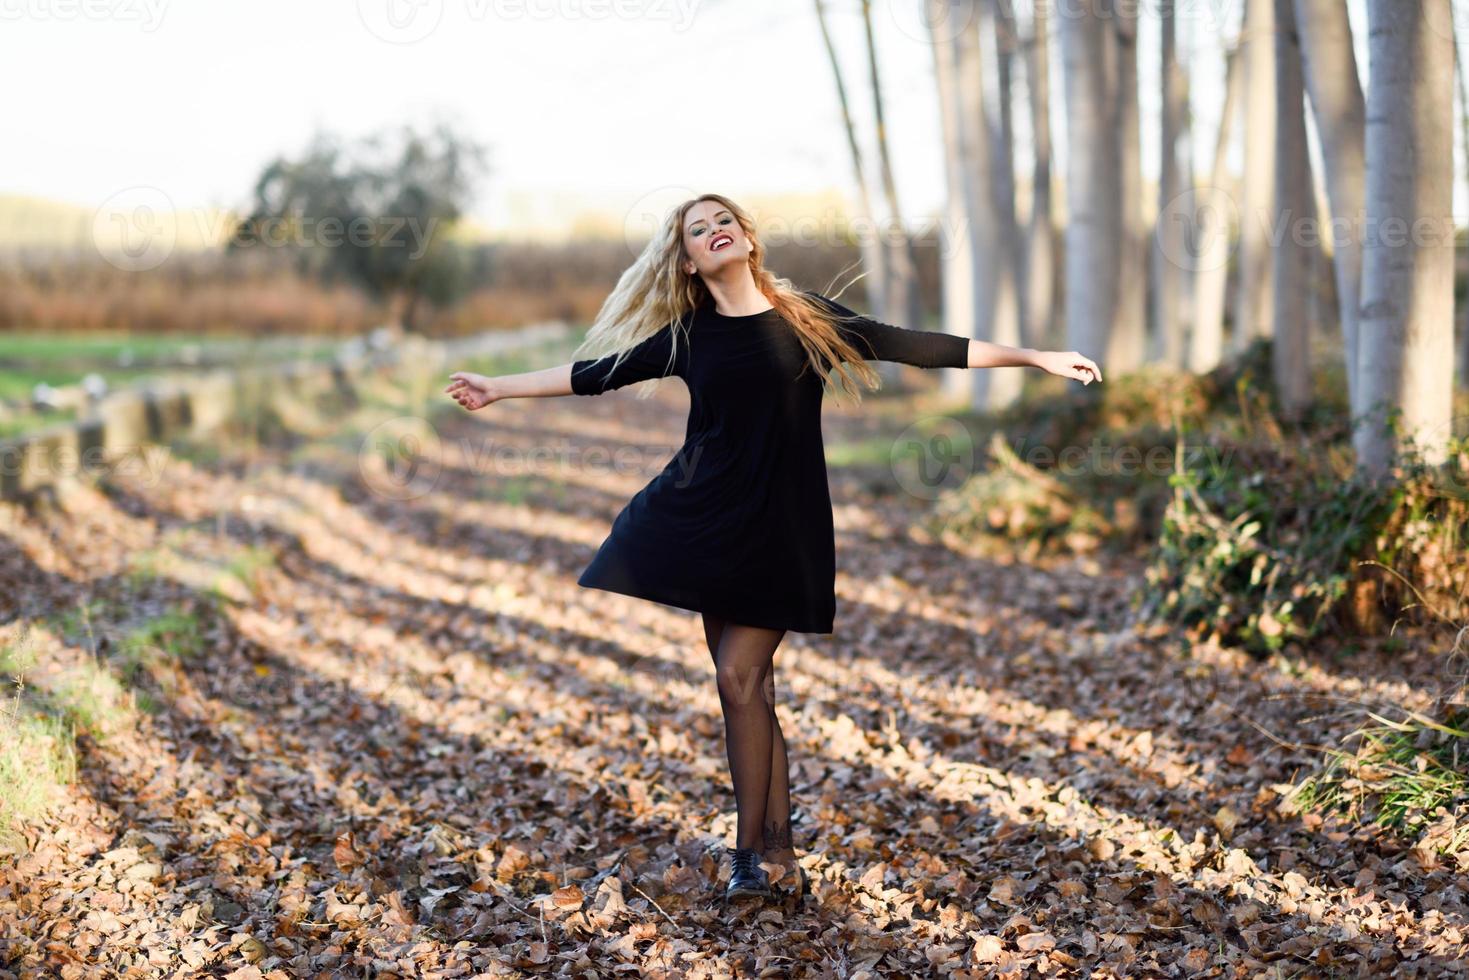 Joven mujer rubia bailando en el bosque de álamos foto